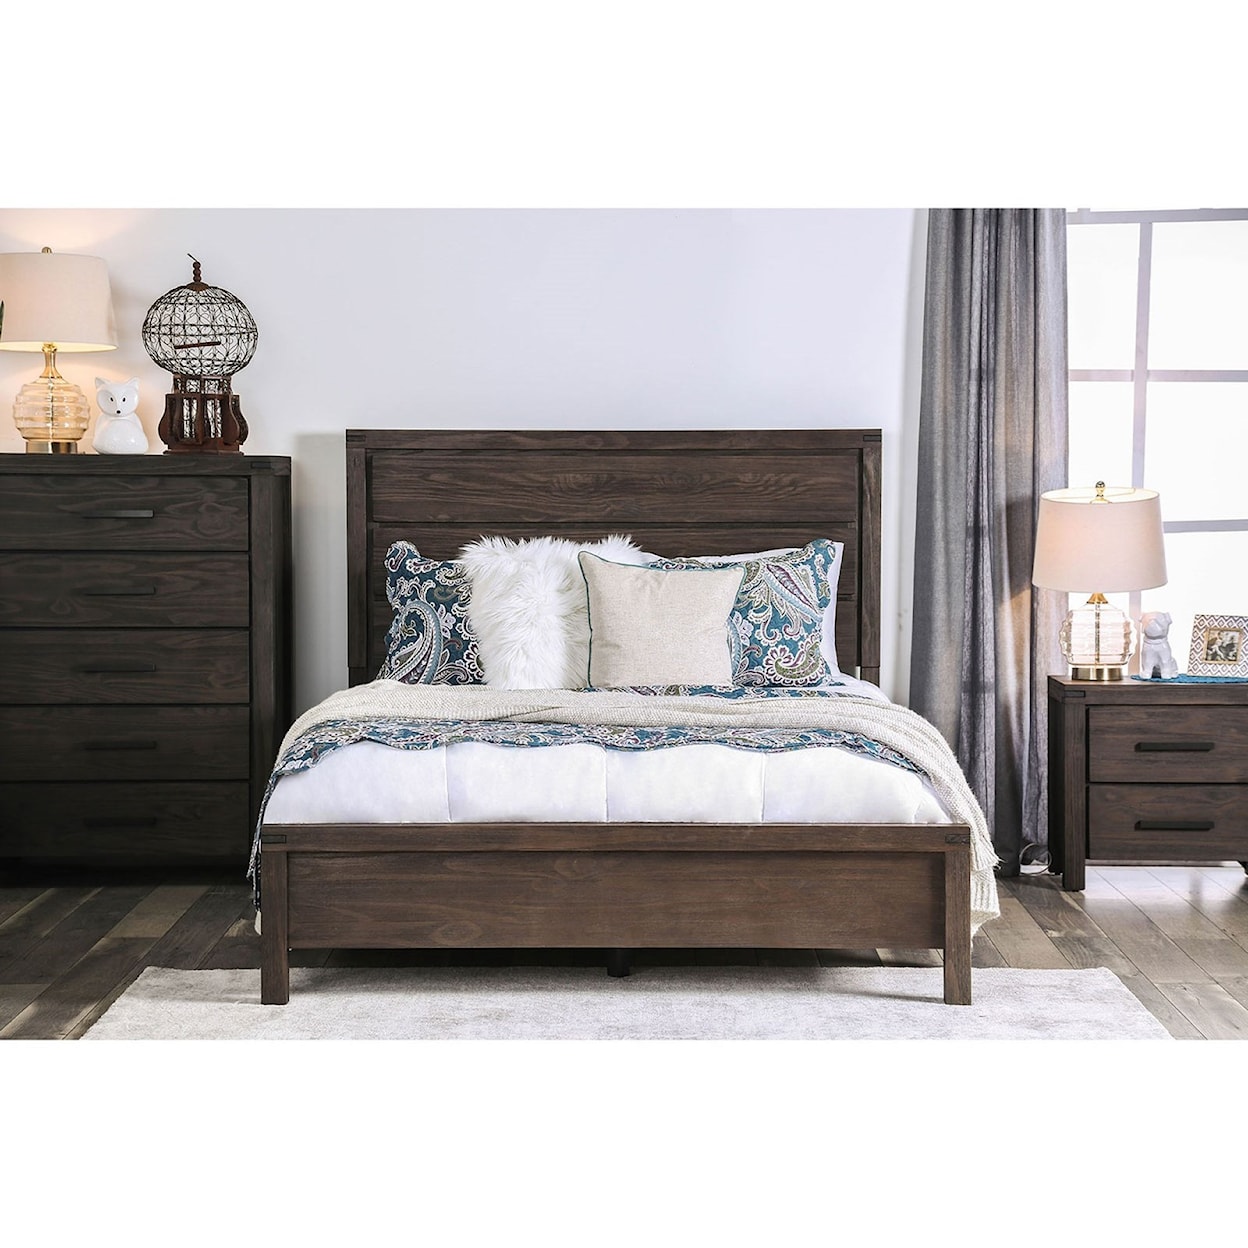 Furniture of America Rexburg King Panel Bed